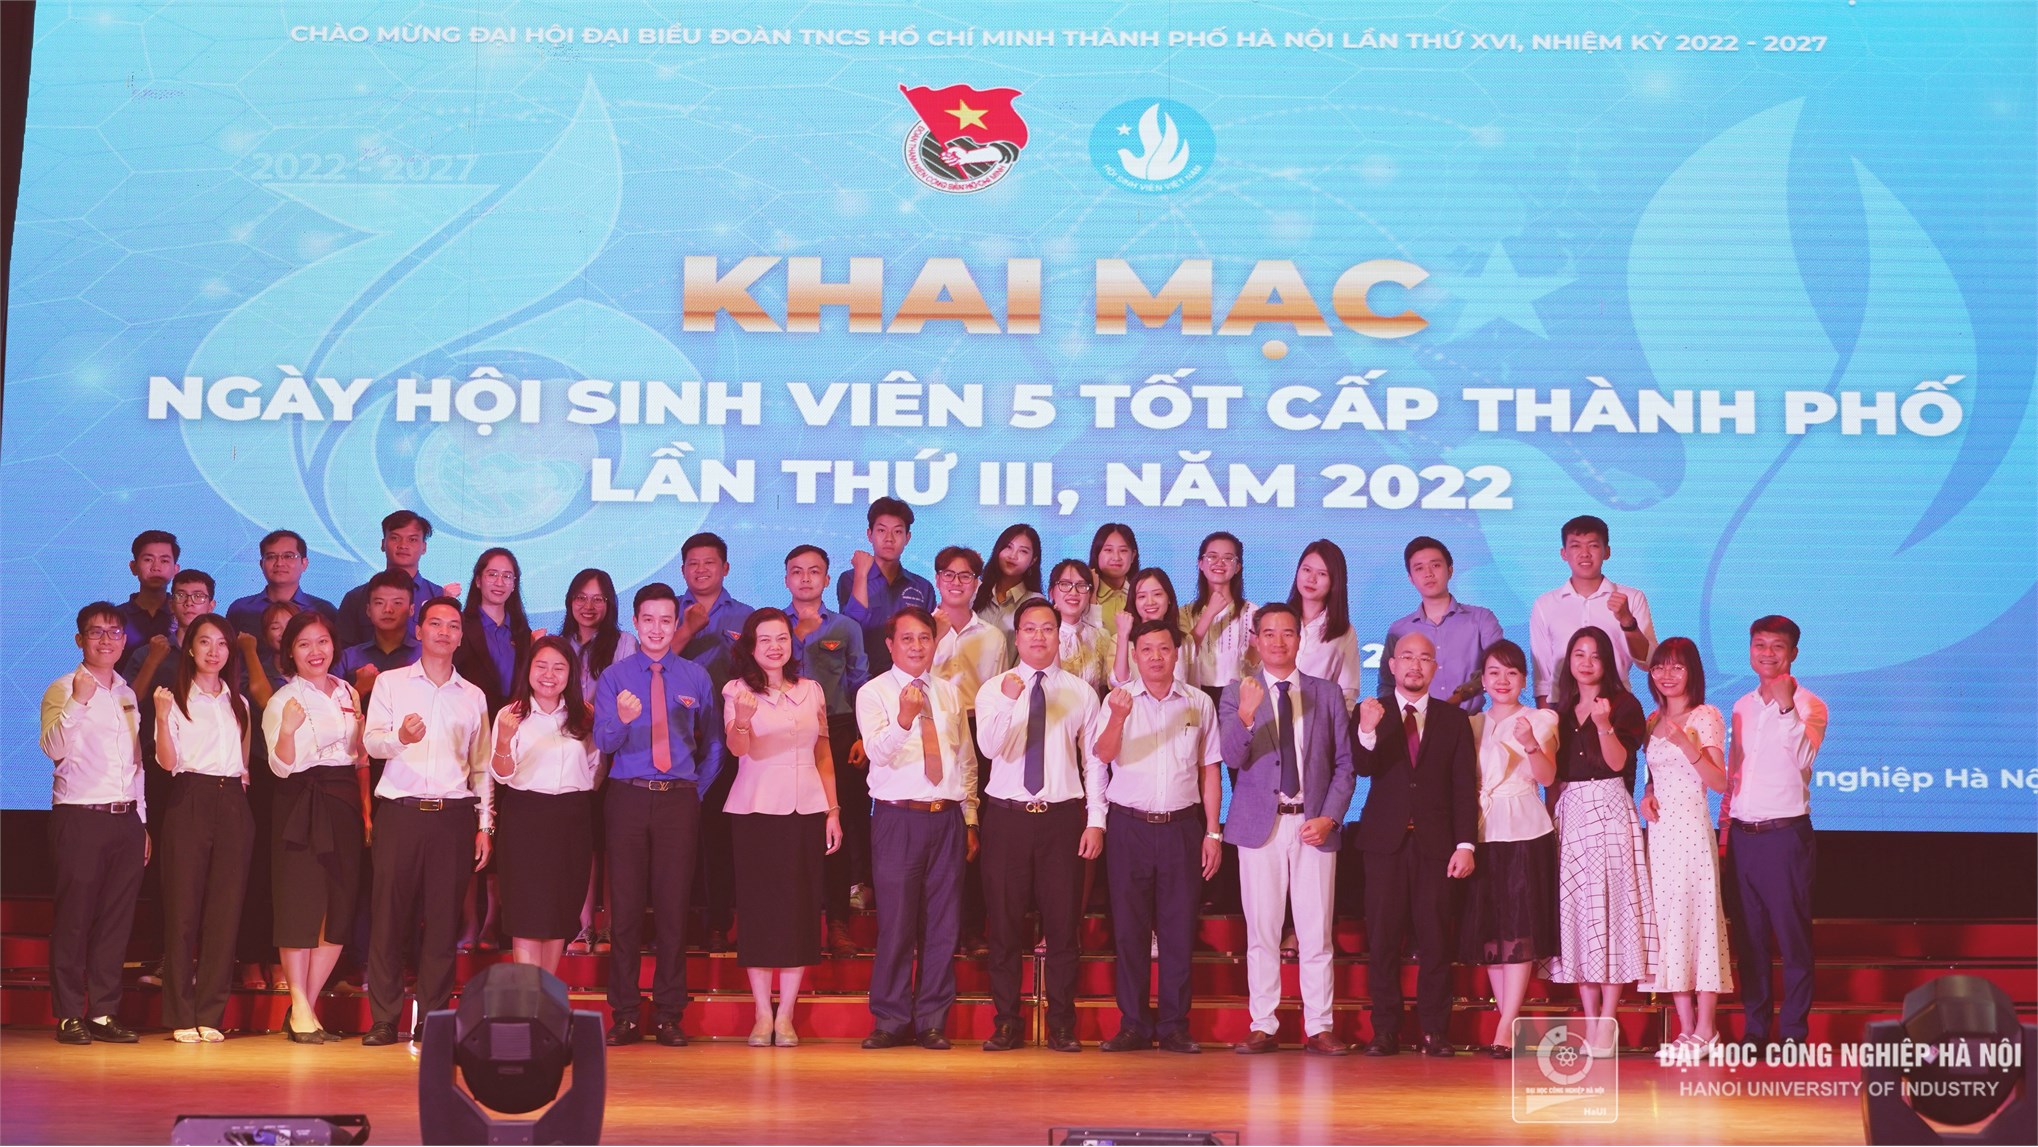 Ngày hội sinh viên 5 tốt Thành phố Hà Nội lần thứ III năm 2022 tổ chức tại Trường Đại học Công nghiệp Hà Nội